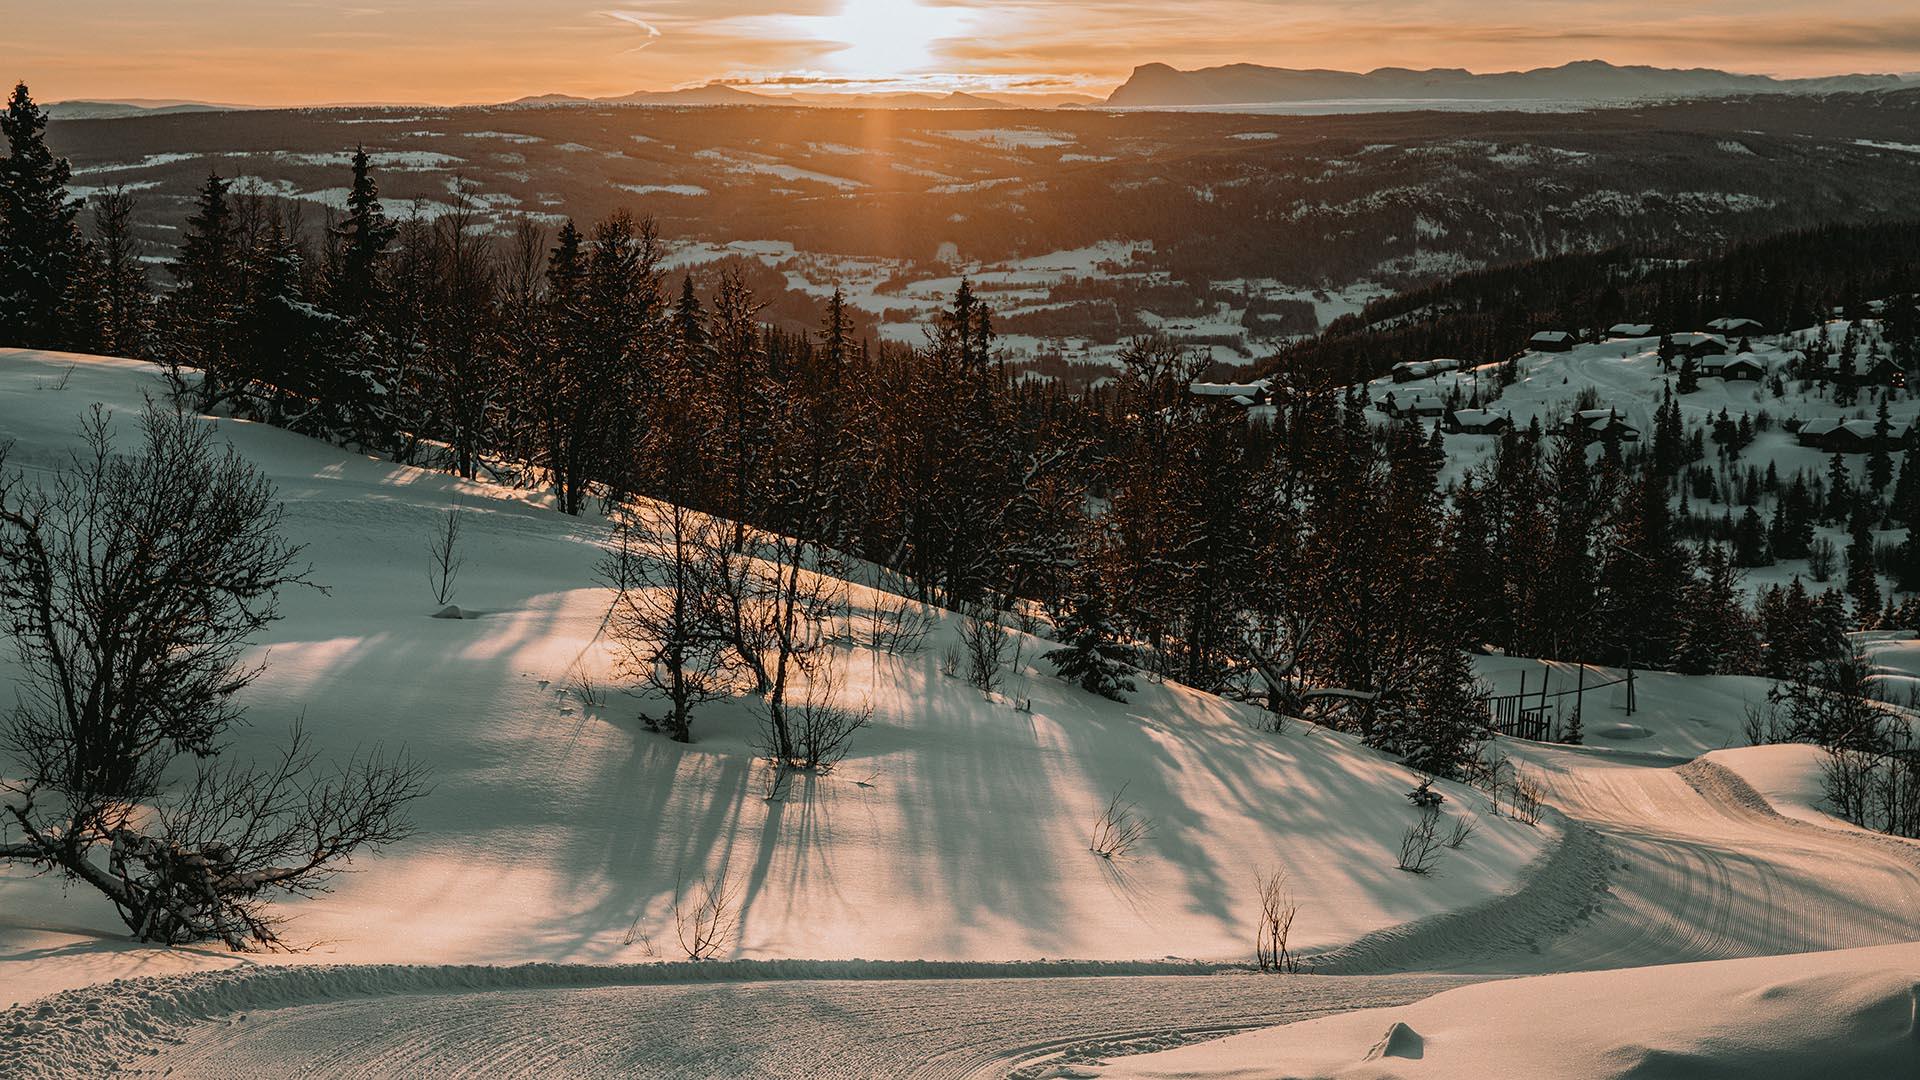 Aussicht über ein Tal gegen die Sonne, die am fernen Horizont hinter Bergen untergeht. Das Abendlicht färbt den Schnee auf dem Boden gelblich.